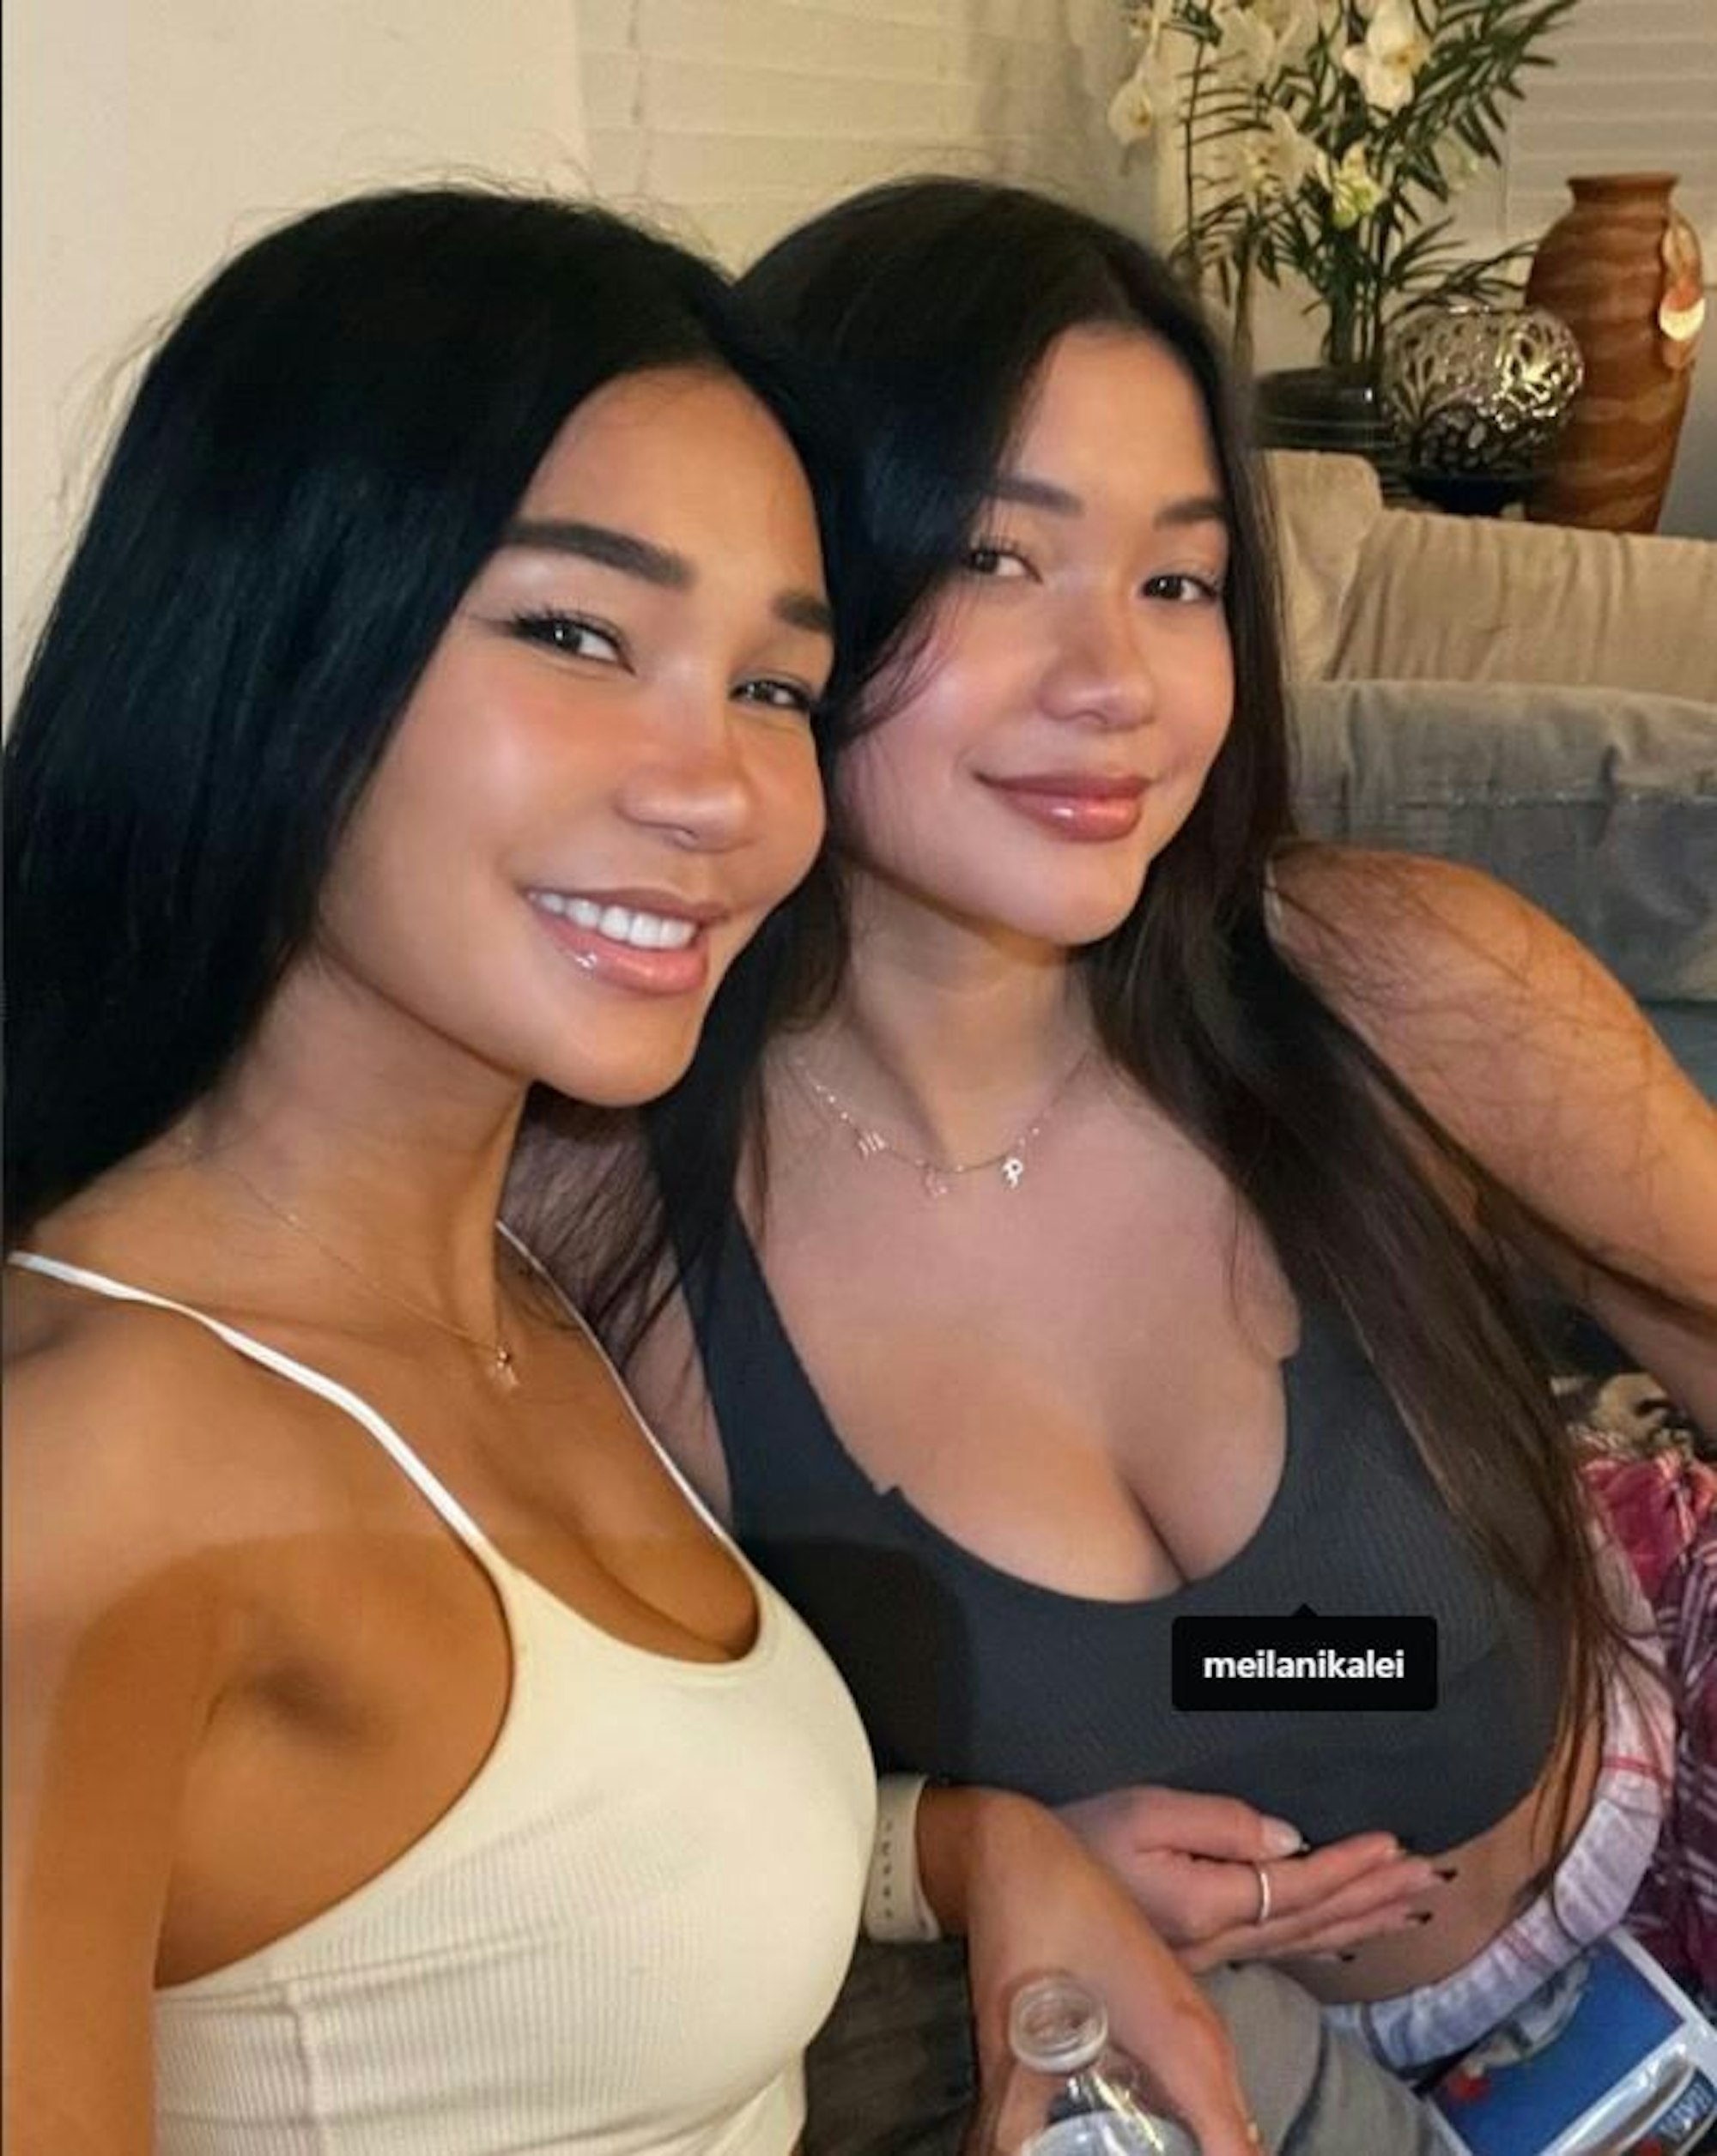 Joleeen und Meilani Diaz auf einem Selfie vom 10. Oktober 2021.